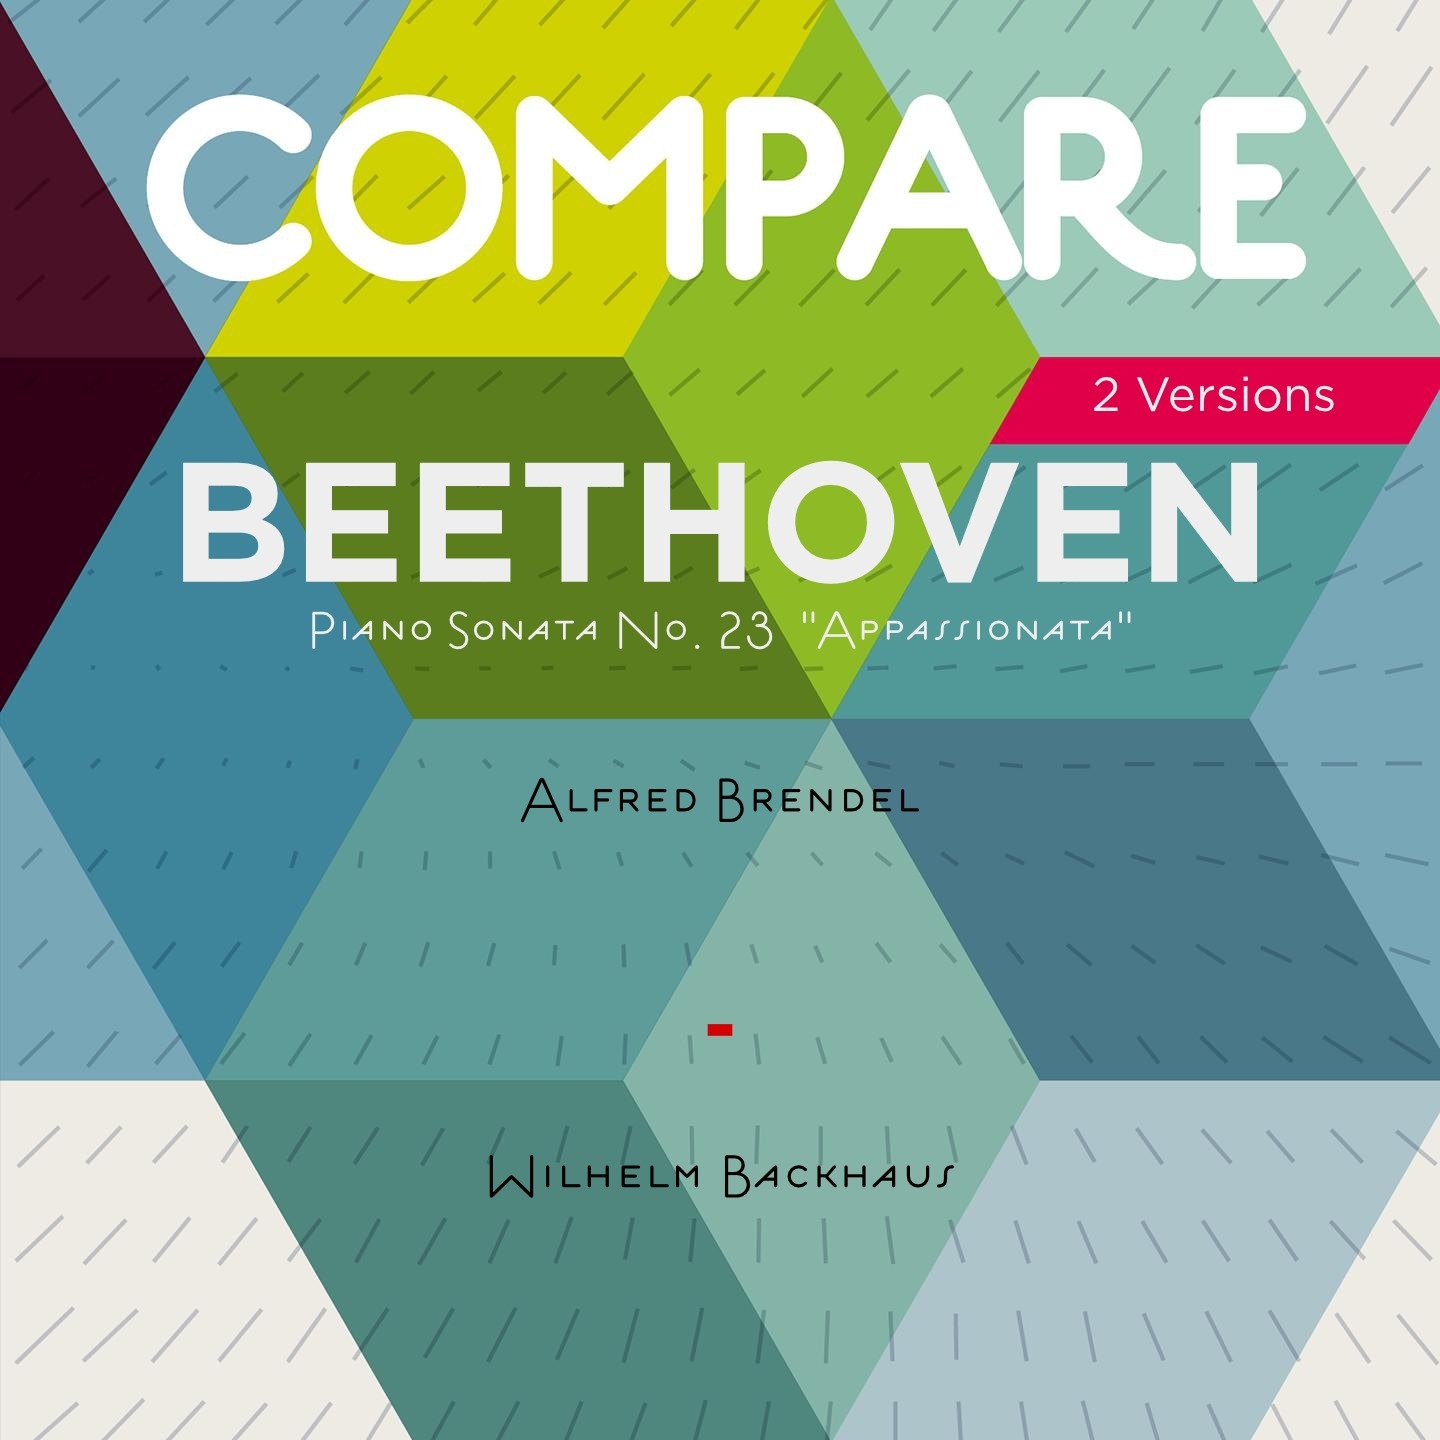 Beethoven: Piano Sonata No. 23 "Appassionata", Alfred Brendel vs. Wilhelm Backhaus (Compare 2 Versions)